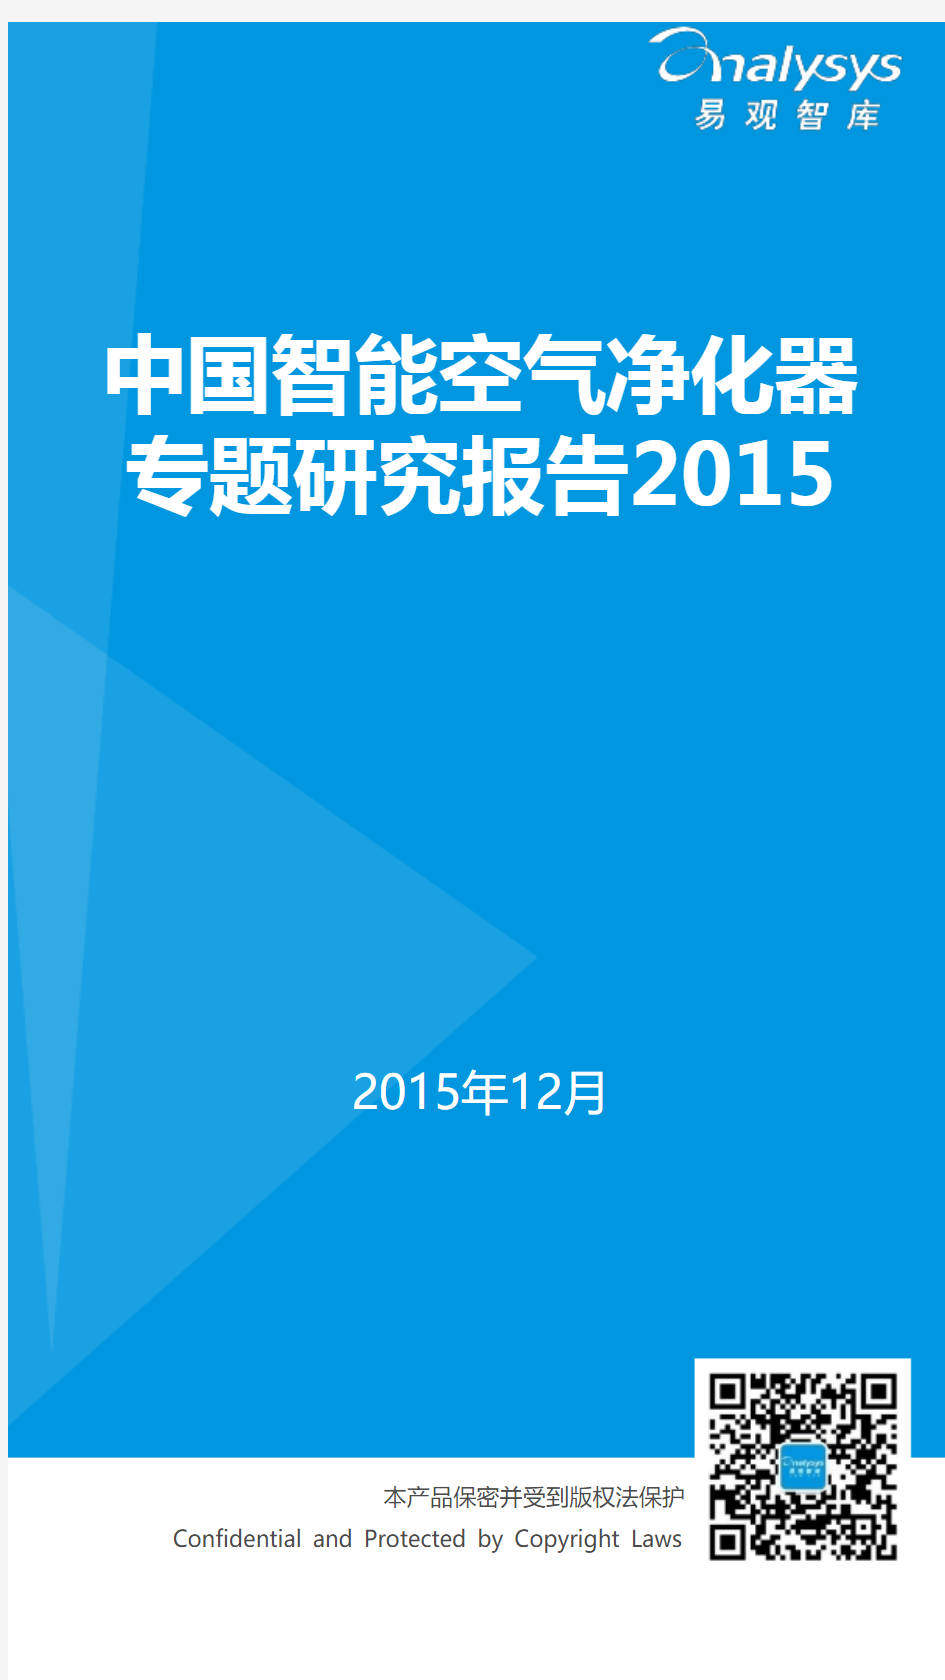 中国智能空气净化器专题研究报告2015